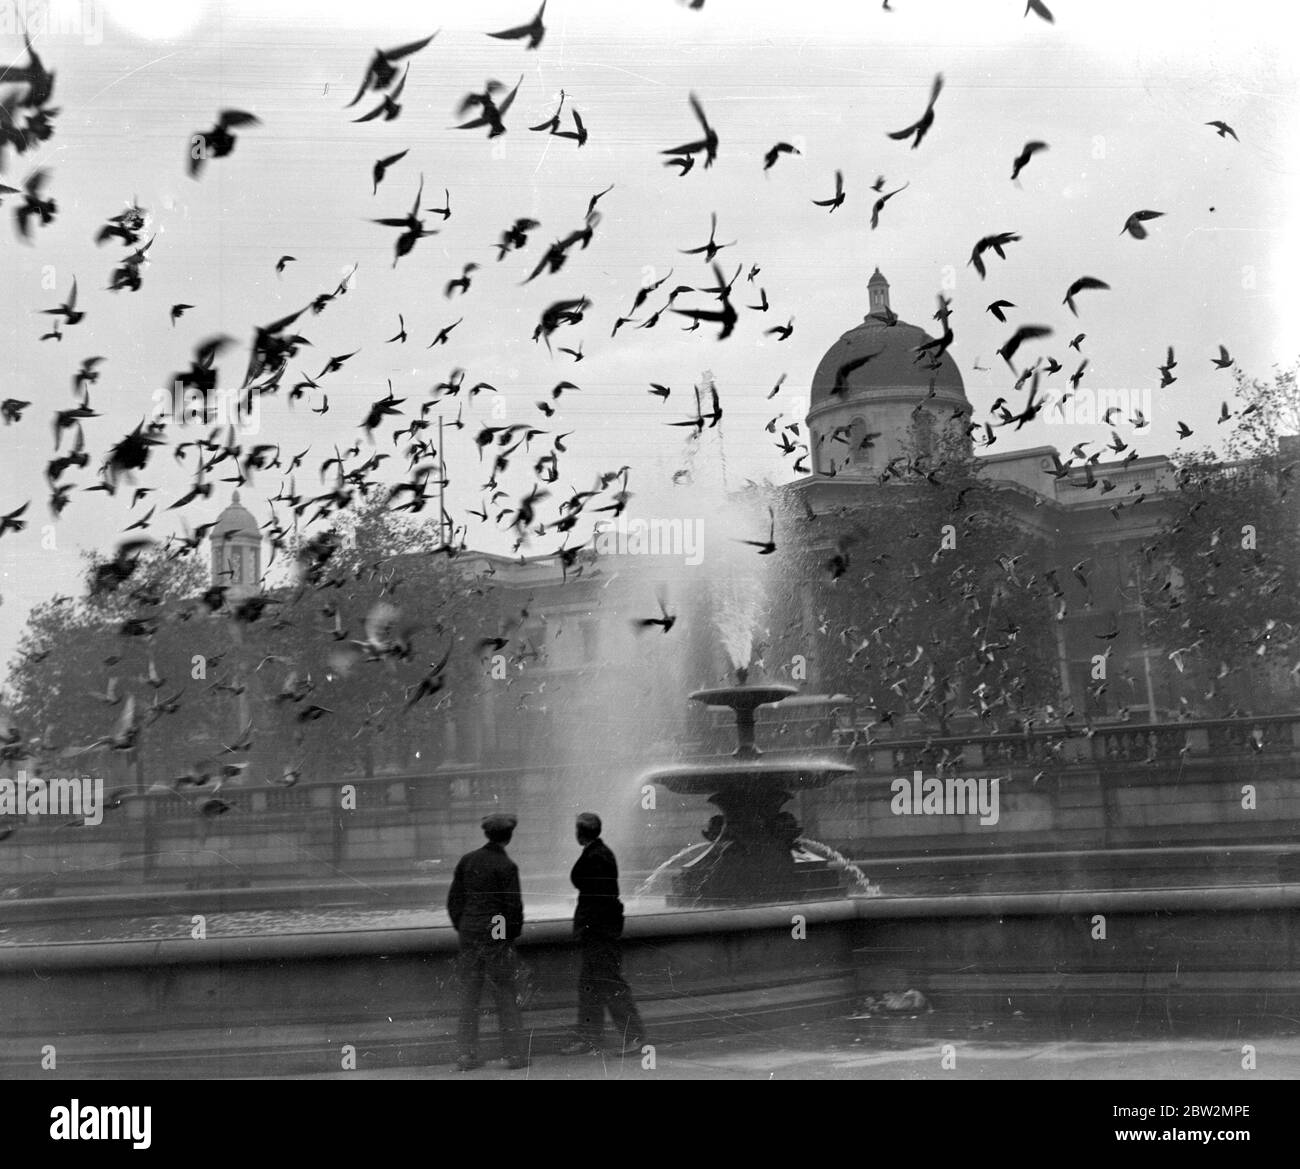 Trotz des Ausdünnungsprozesses der letzten Zeit sind die Tauben auf dem Trafalgar Square immer noch zahlreich. Stockfoto